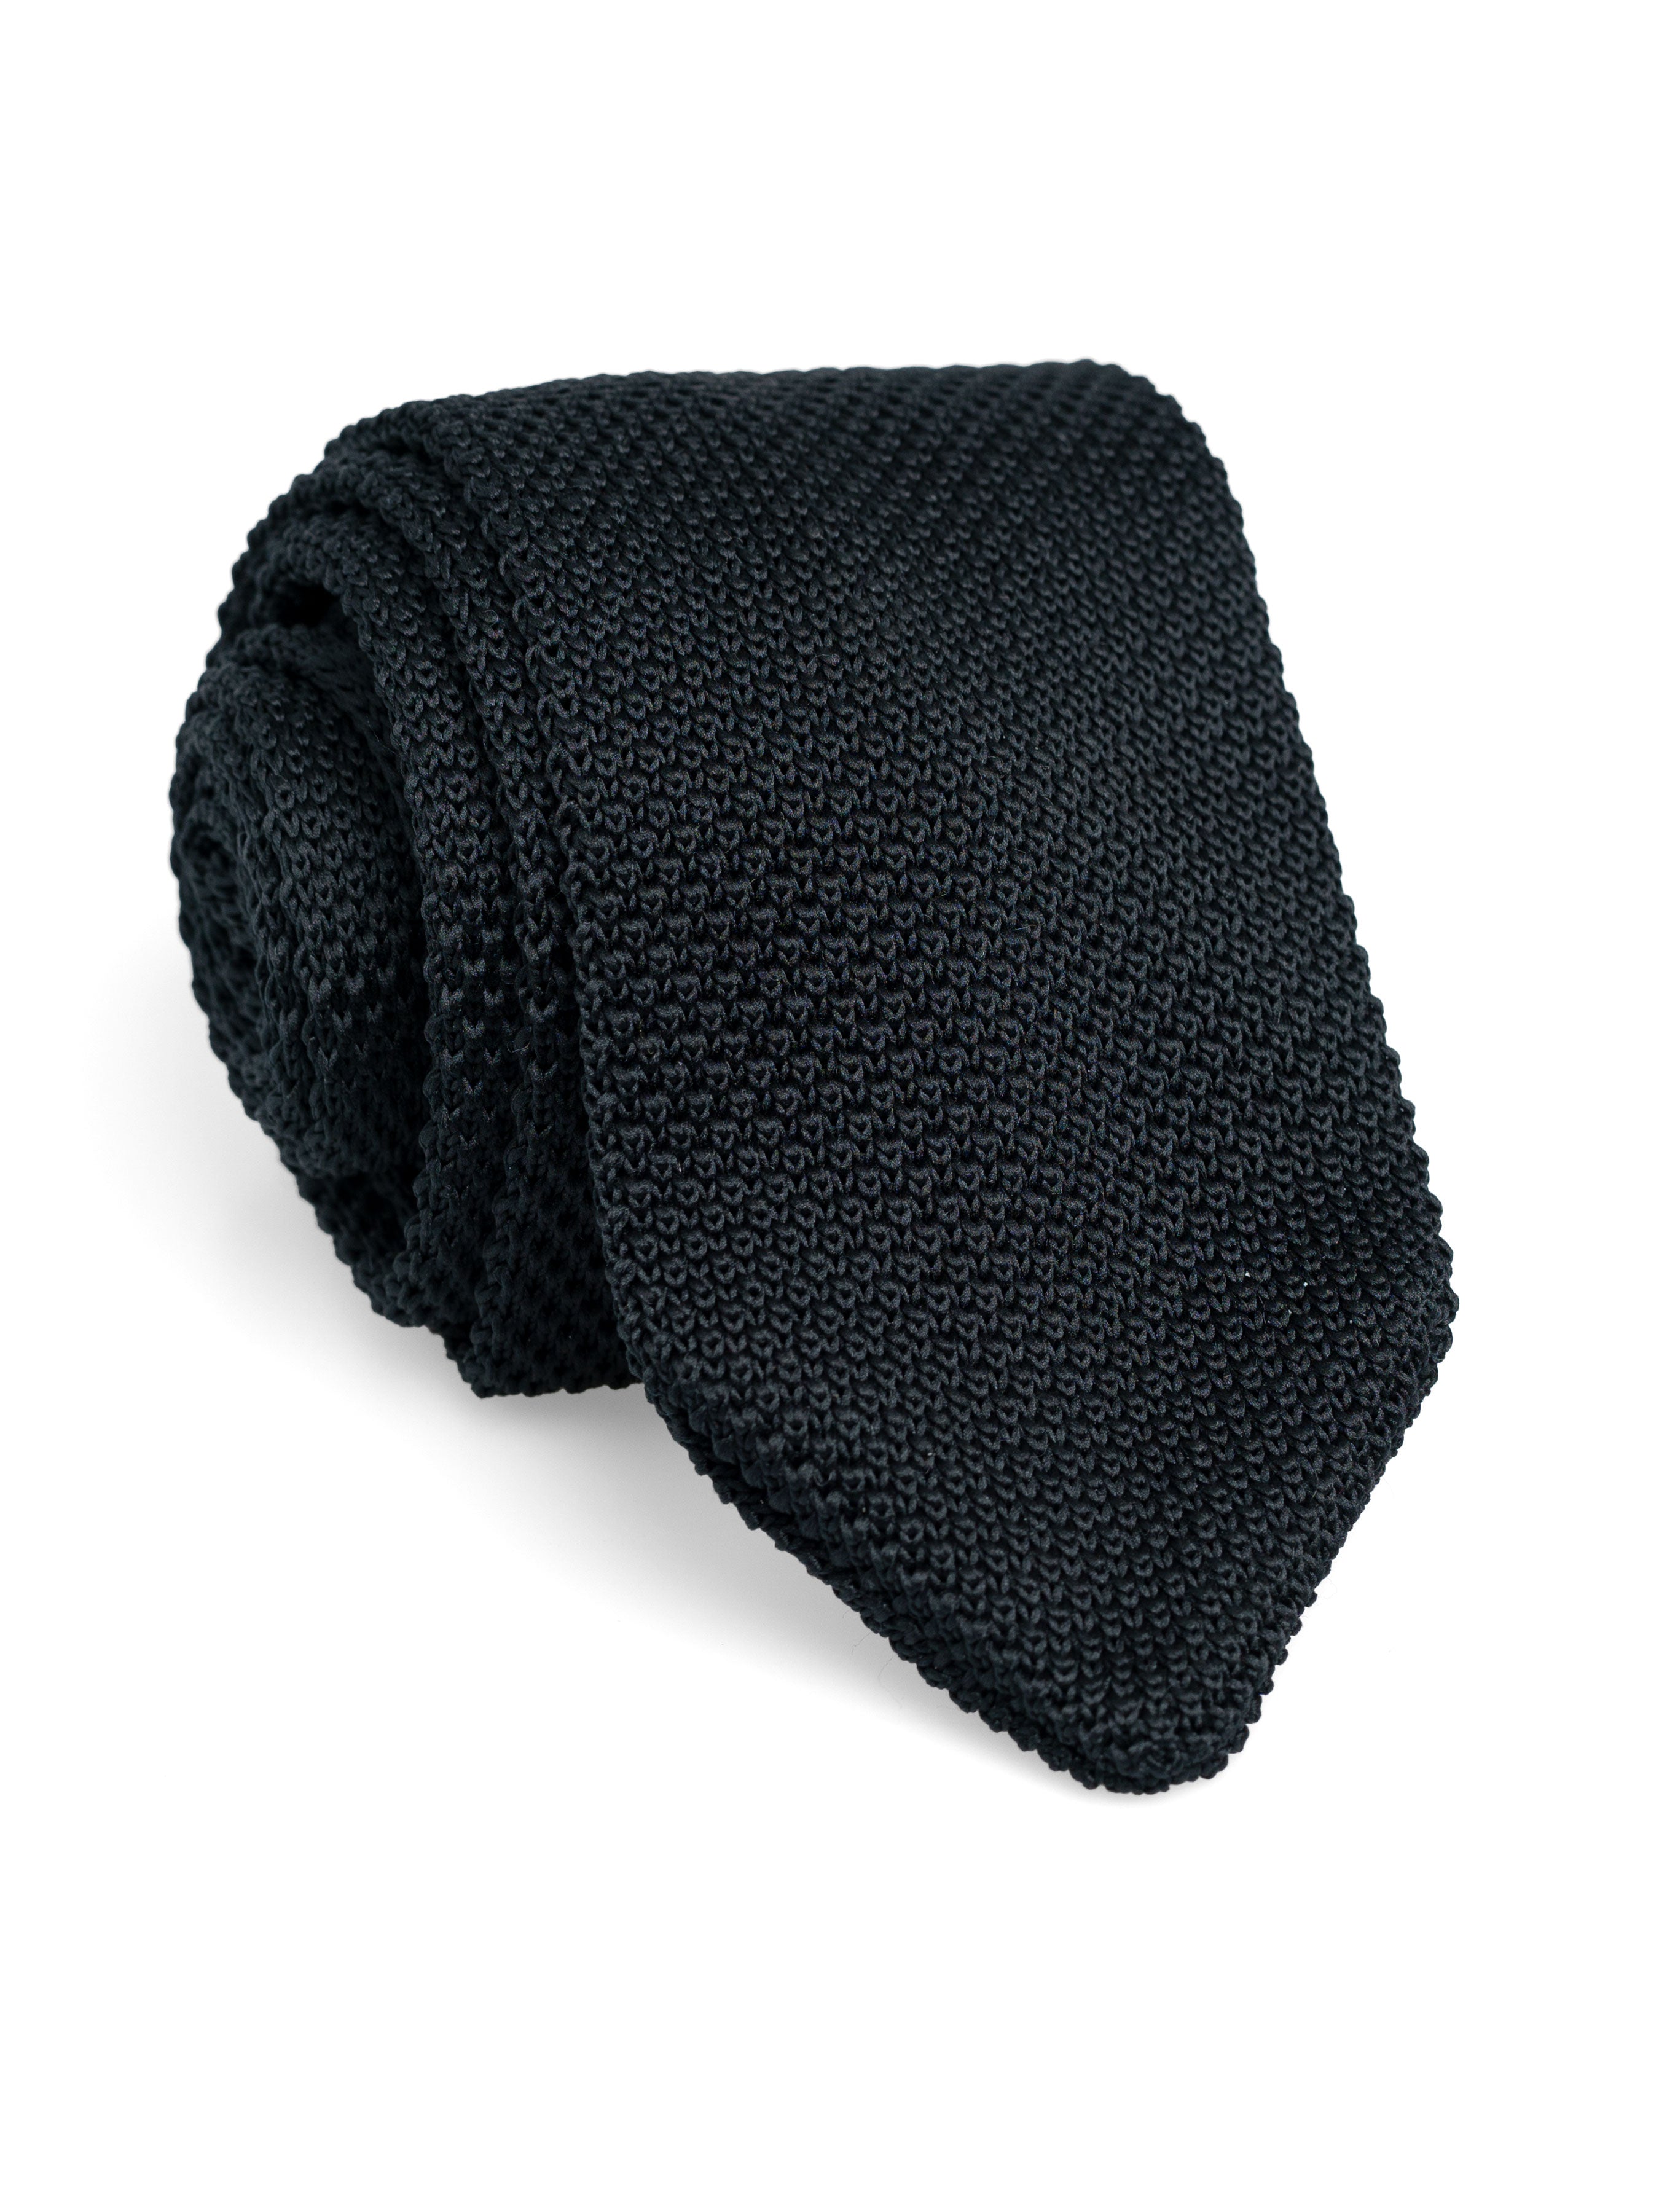 Knit Tie - Black Solid - Zeve Shoes